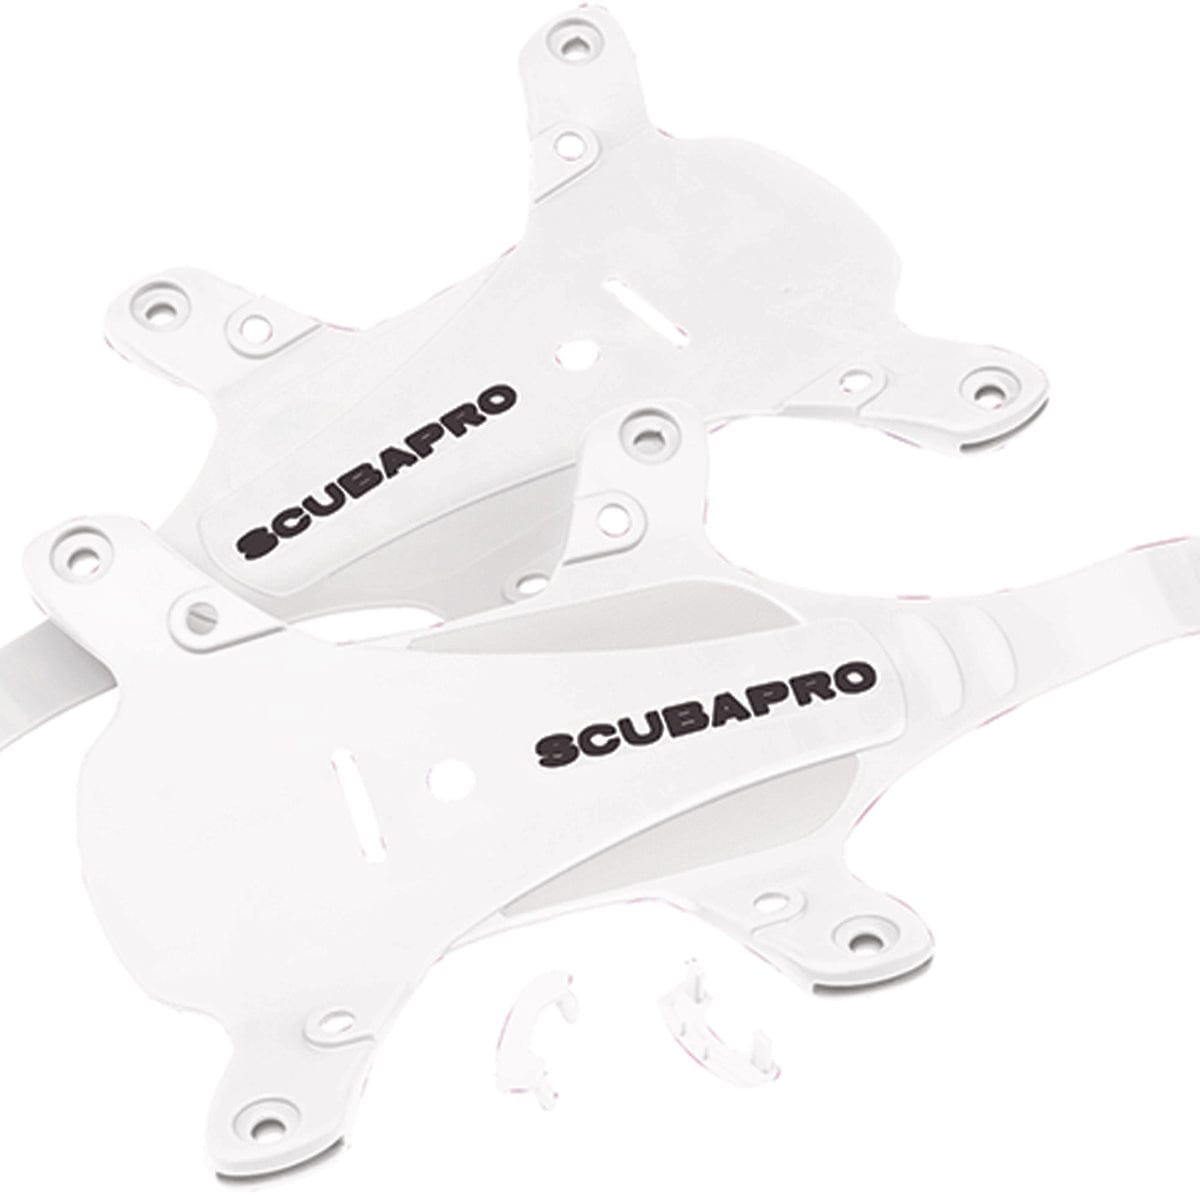 Scubapro Hydros Pro Color Kit - White - 2